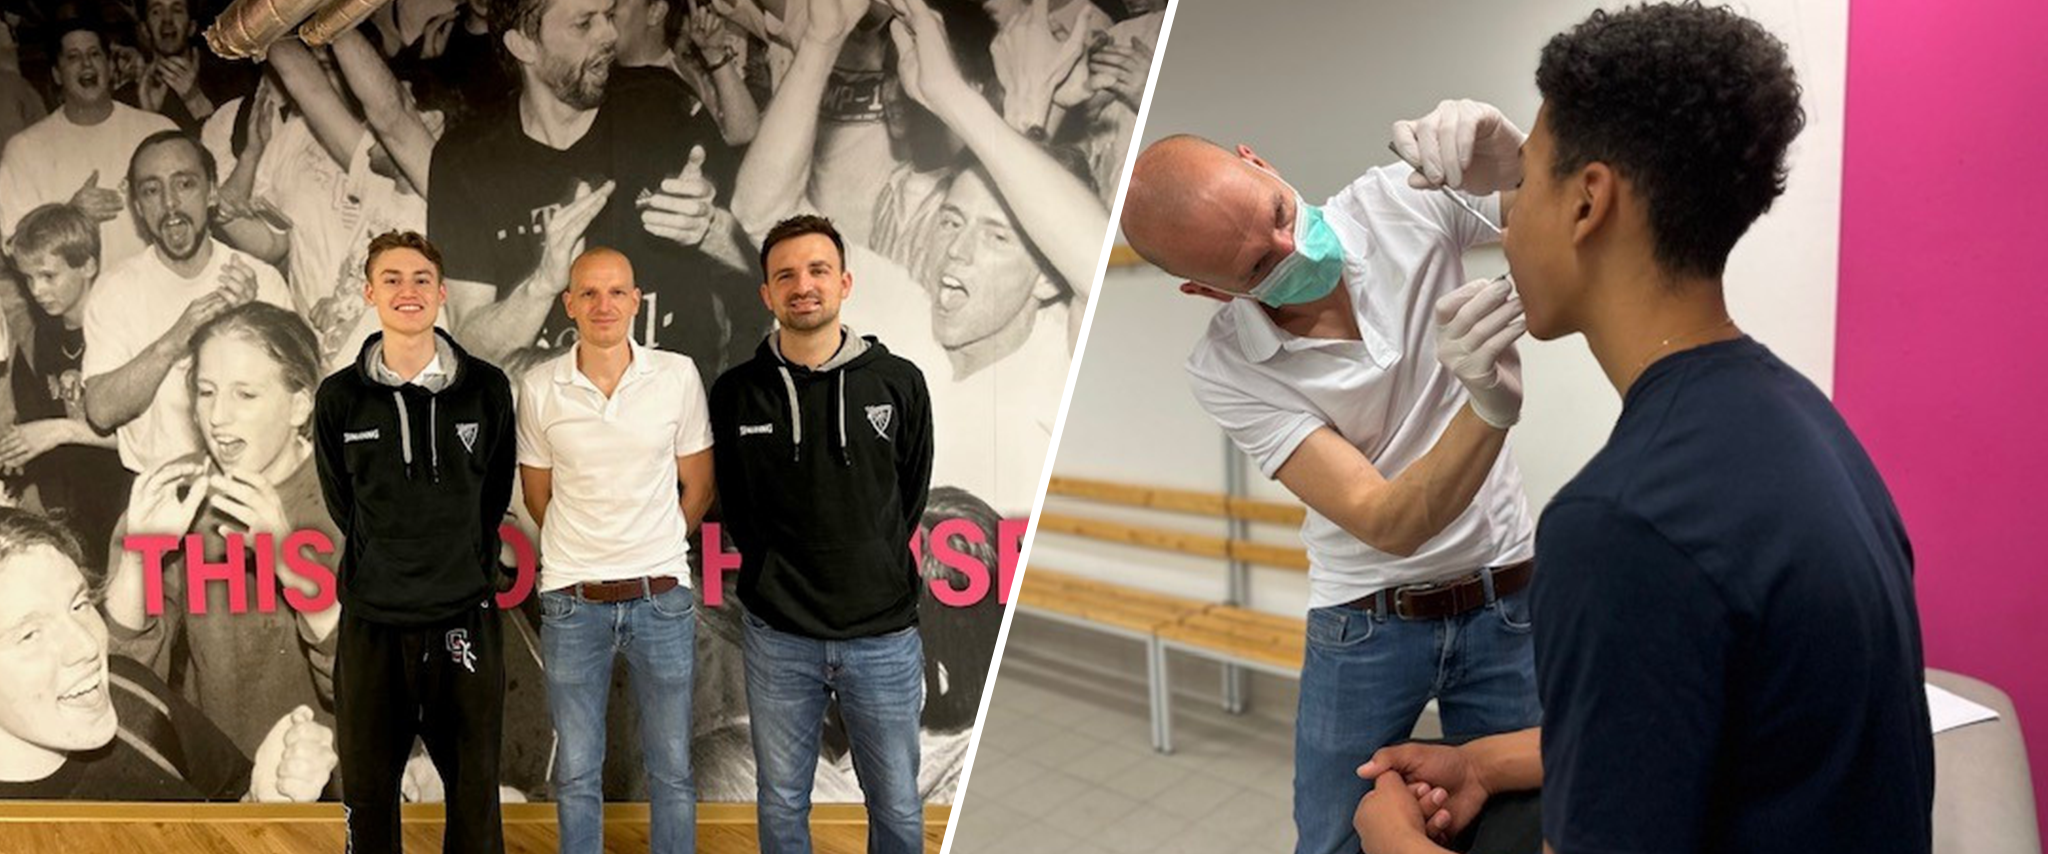 Universitätsklinikum Bonn übernimmt zahnmedizinische Betreuung für Nachwuchssportler im Basketball